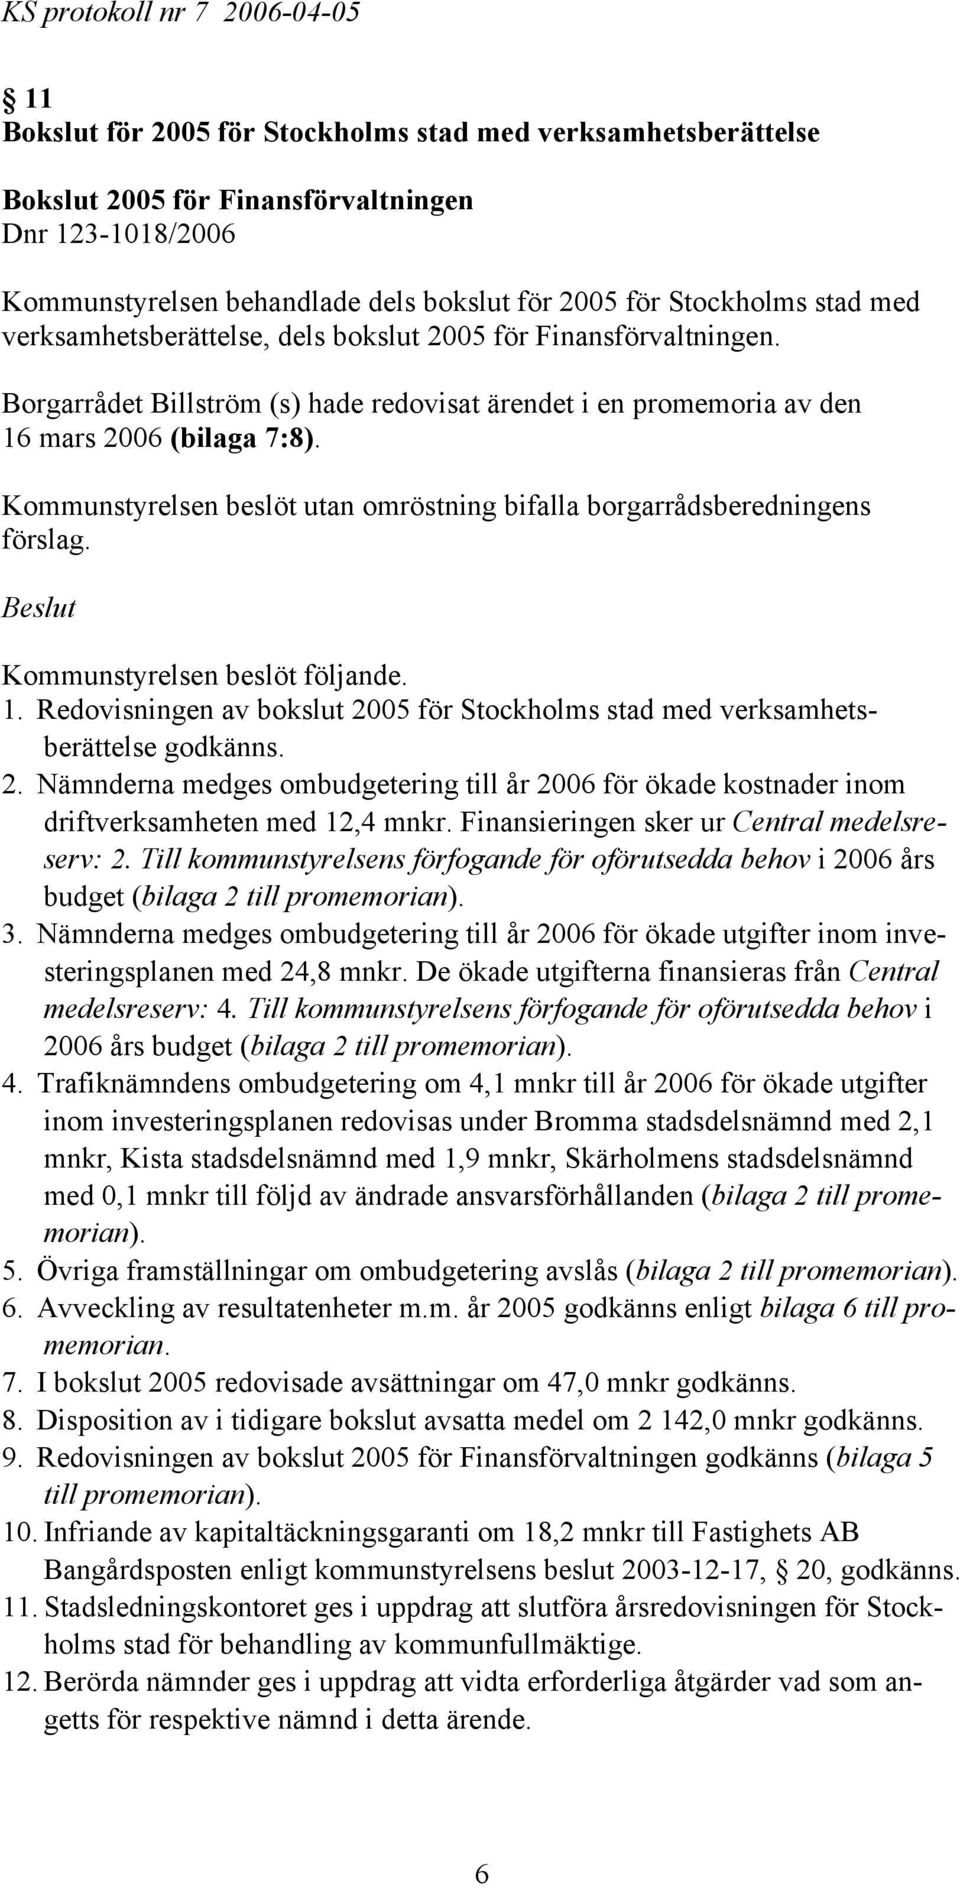 mars 2006 (bilaga 7:8). 1. Redovisningen av bokslut 2005 för Stockholms stad med verksamhetsberättelse godkänns. 2. Nämnderna medges ombudgetering till år 2006 för ökade kostnader inom driftverksamheten med 12,4 mnkr.